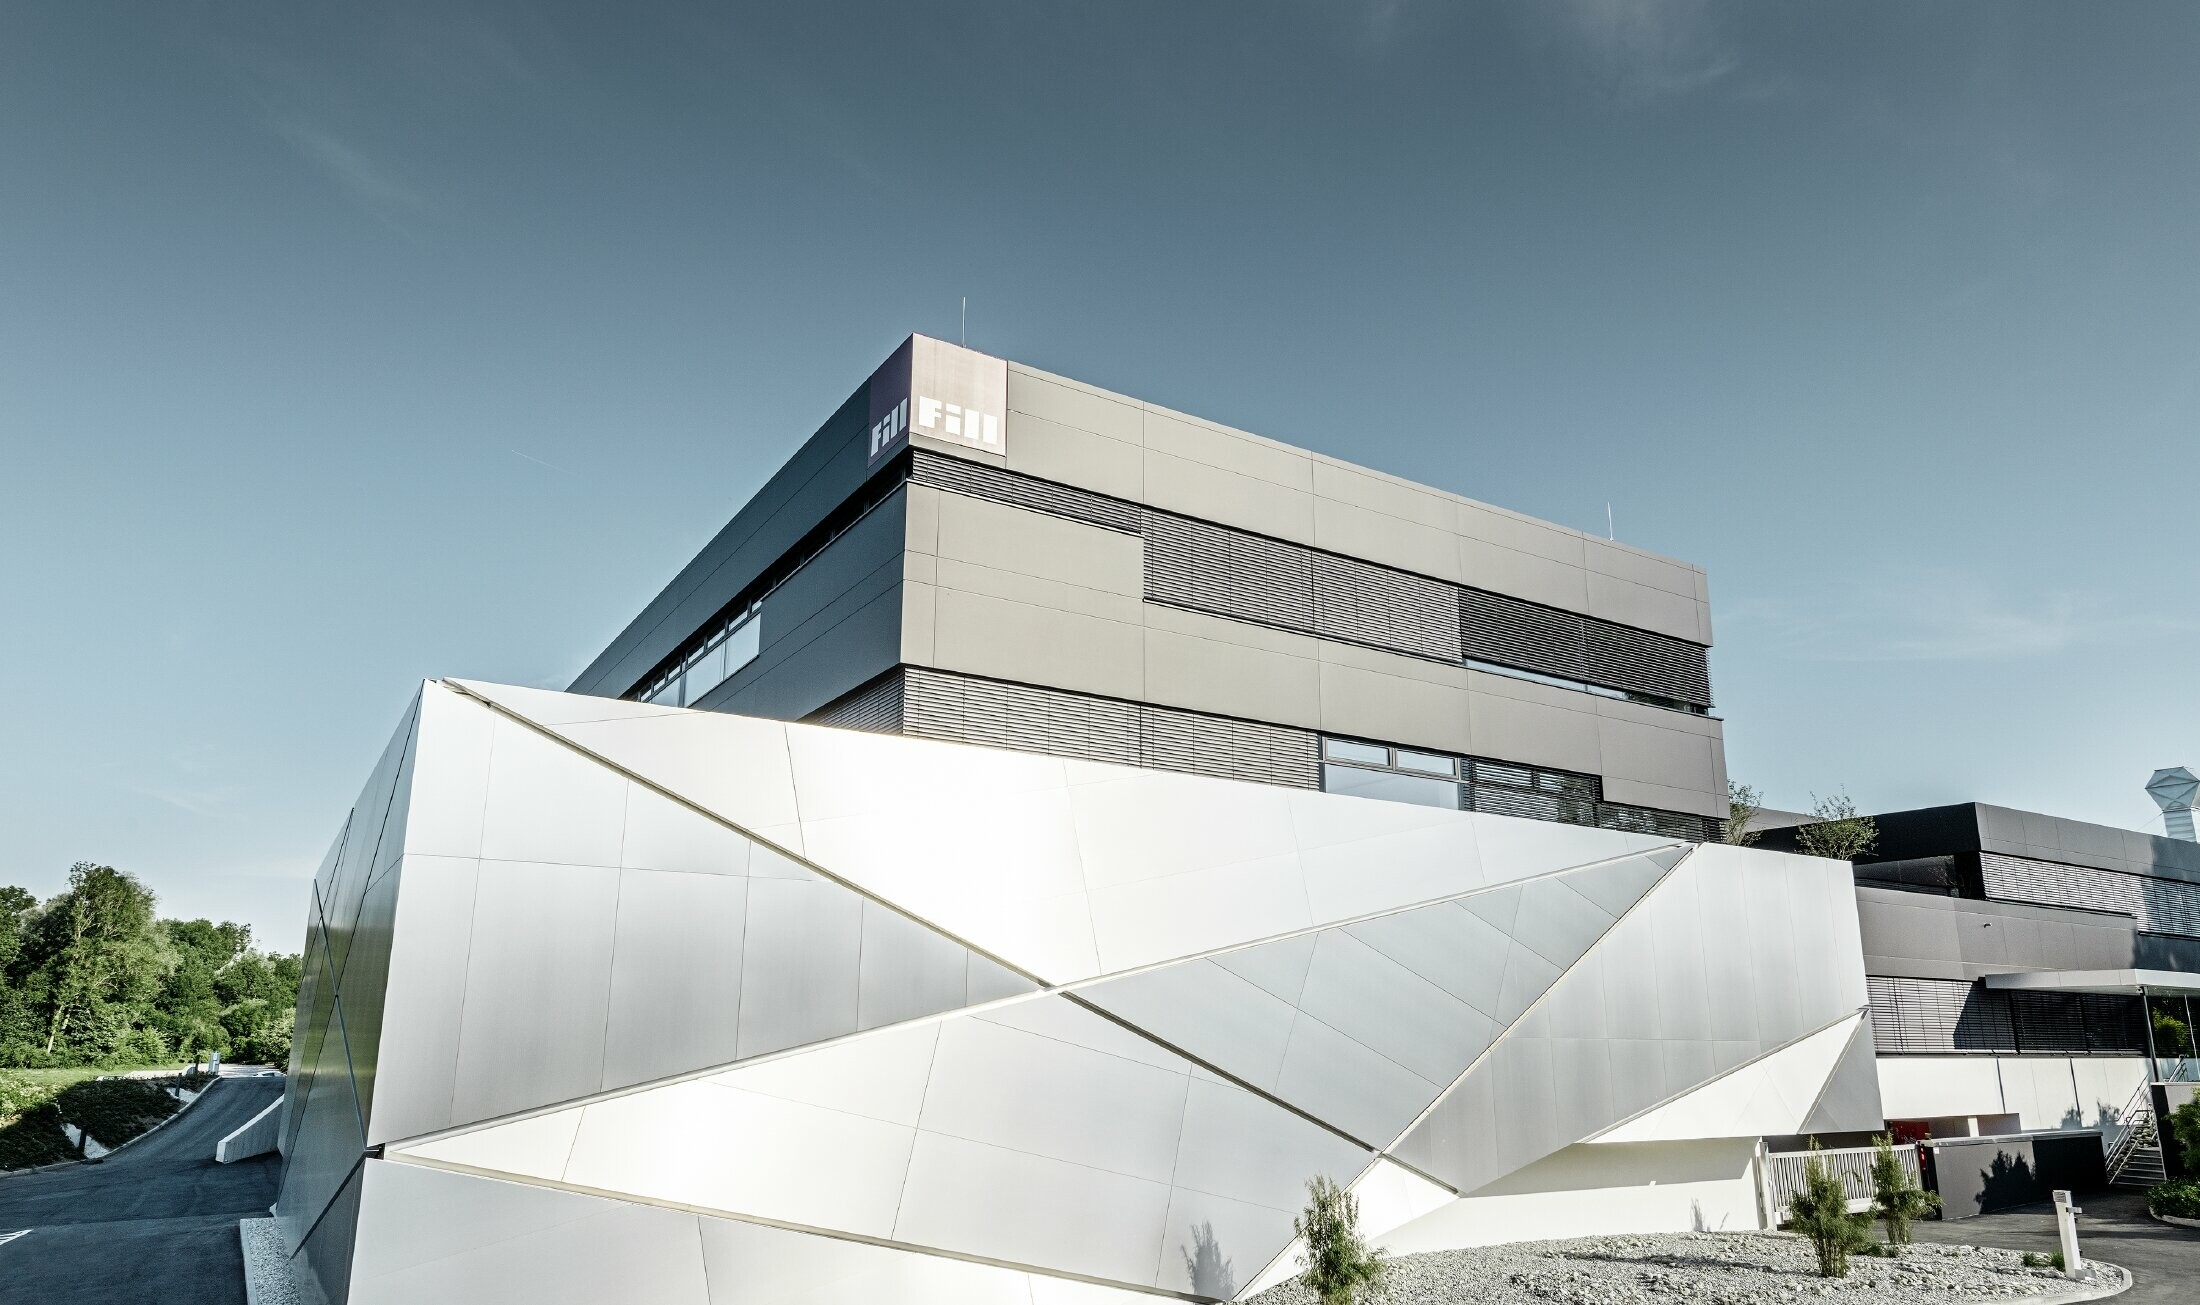 Bâtiment d’entreprise de la société Fill — Façade futuriste aux joints rétroéclairés réalisée avec des panneaux composites PREFA en aluminium brossé